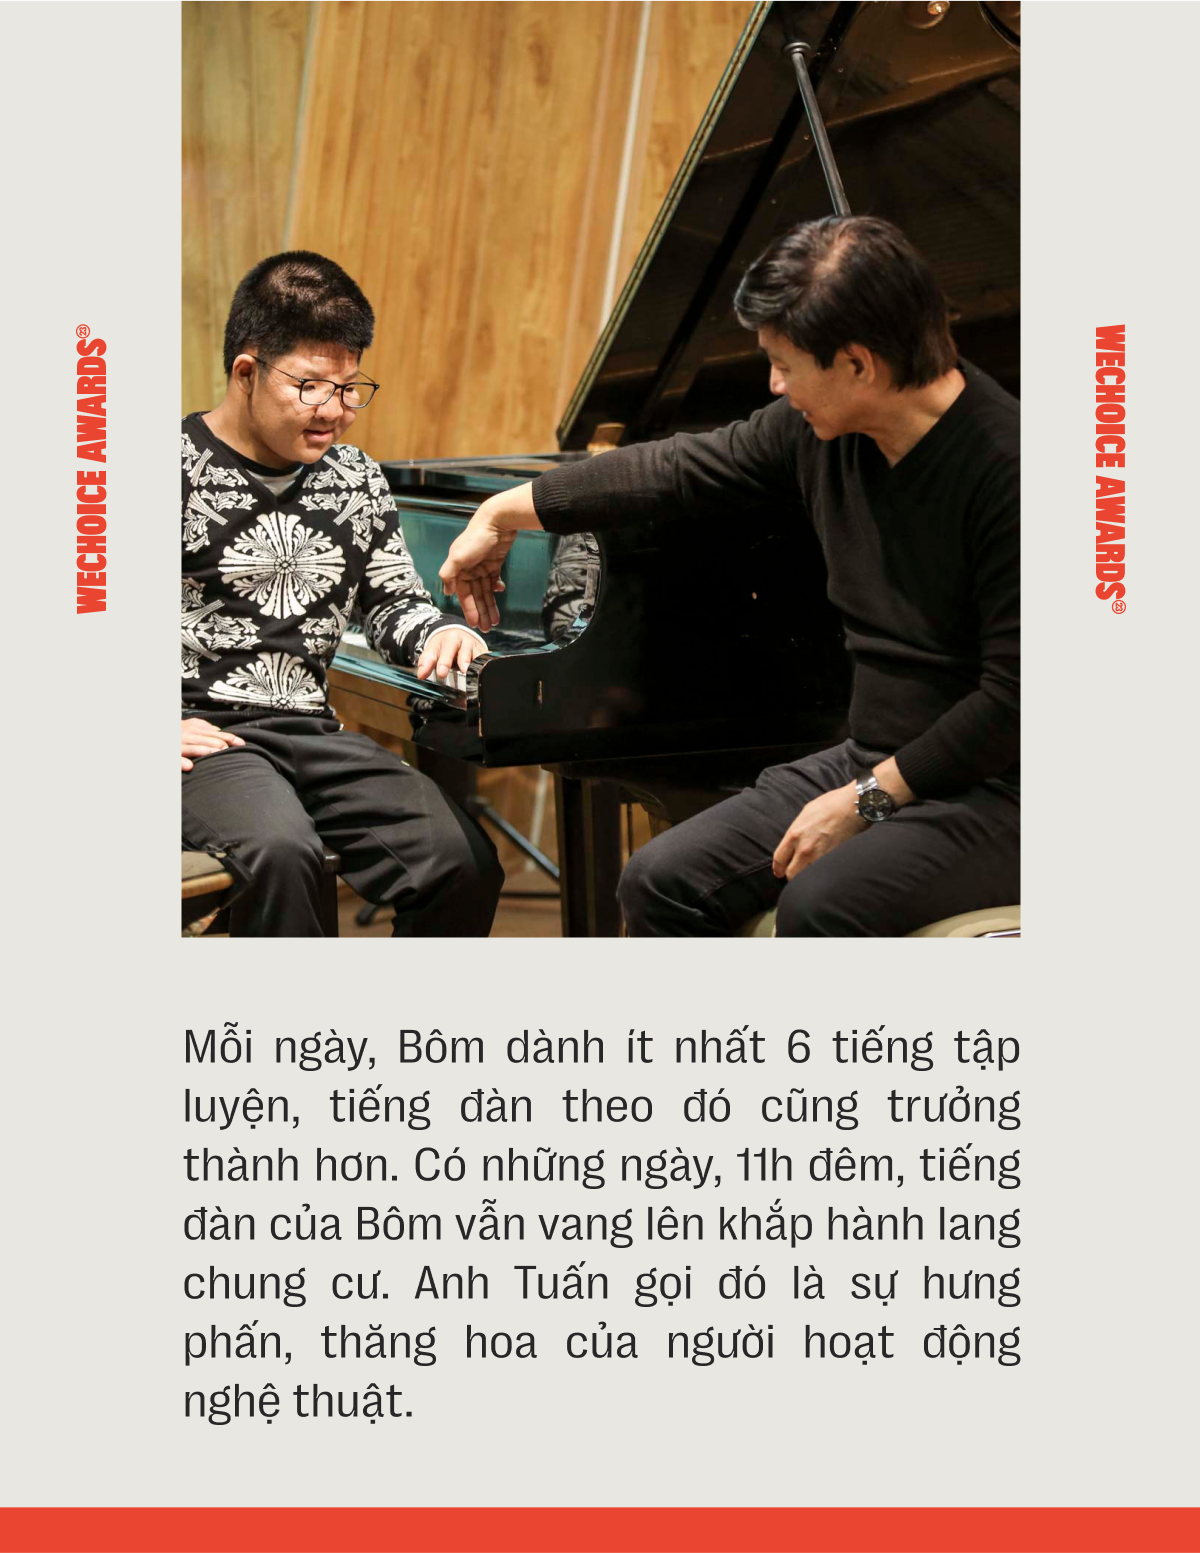 Tuổi 21 của con trai Nghệ sĩ Quốc Tuấn: “Bé” Bôm ngày nào đã bước vào kỳ thi quan trọng ở Học Viện Âm nhạc- Ảnh 14.